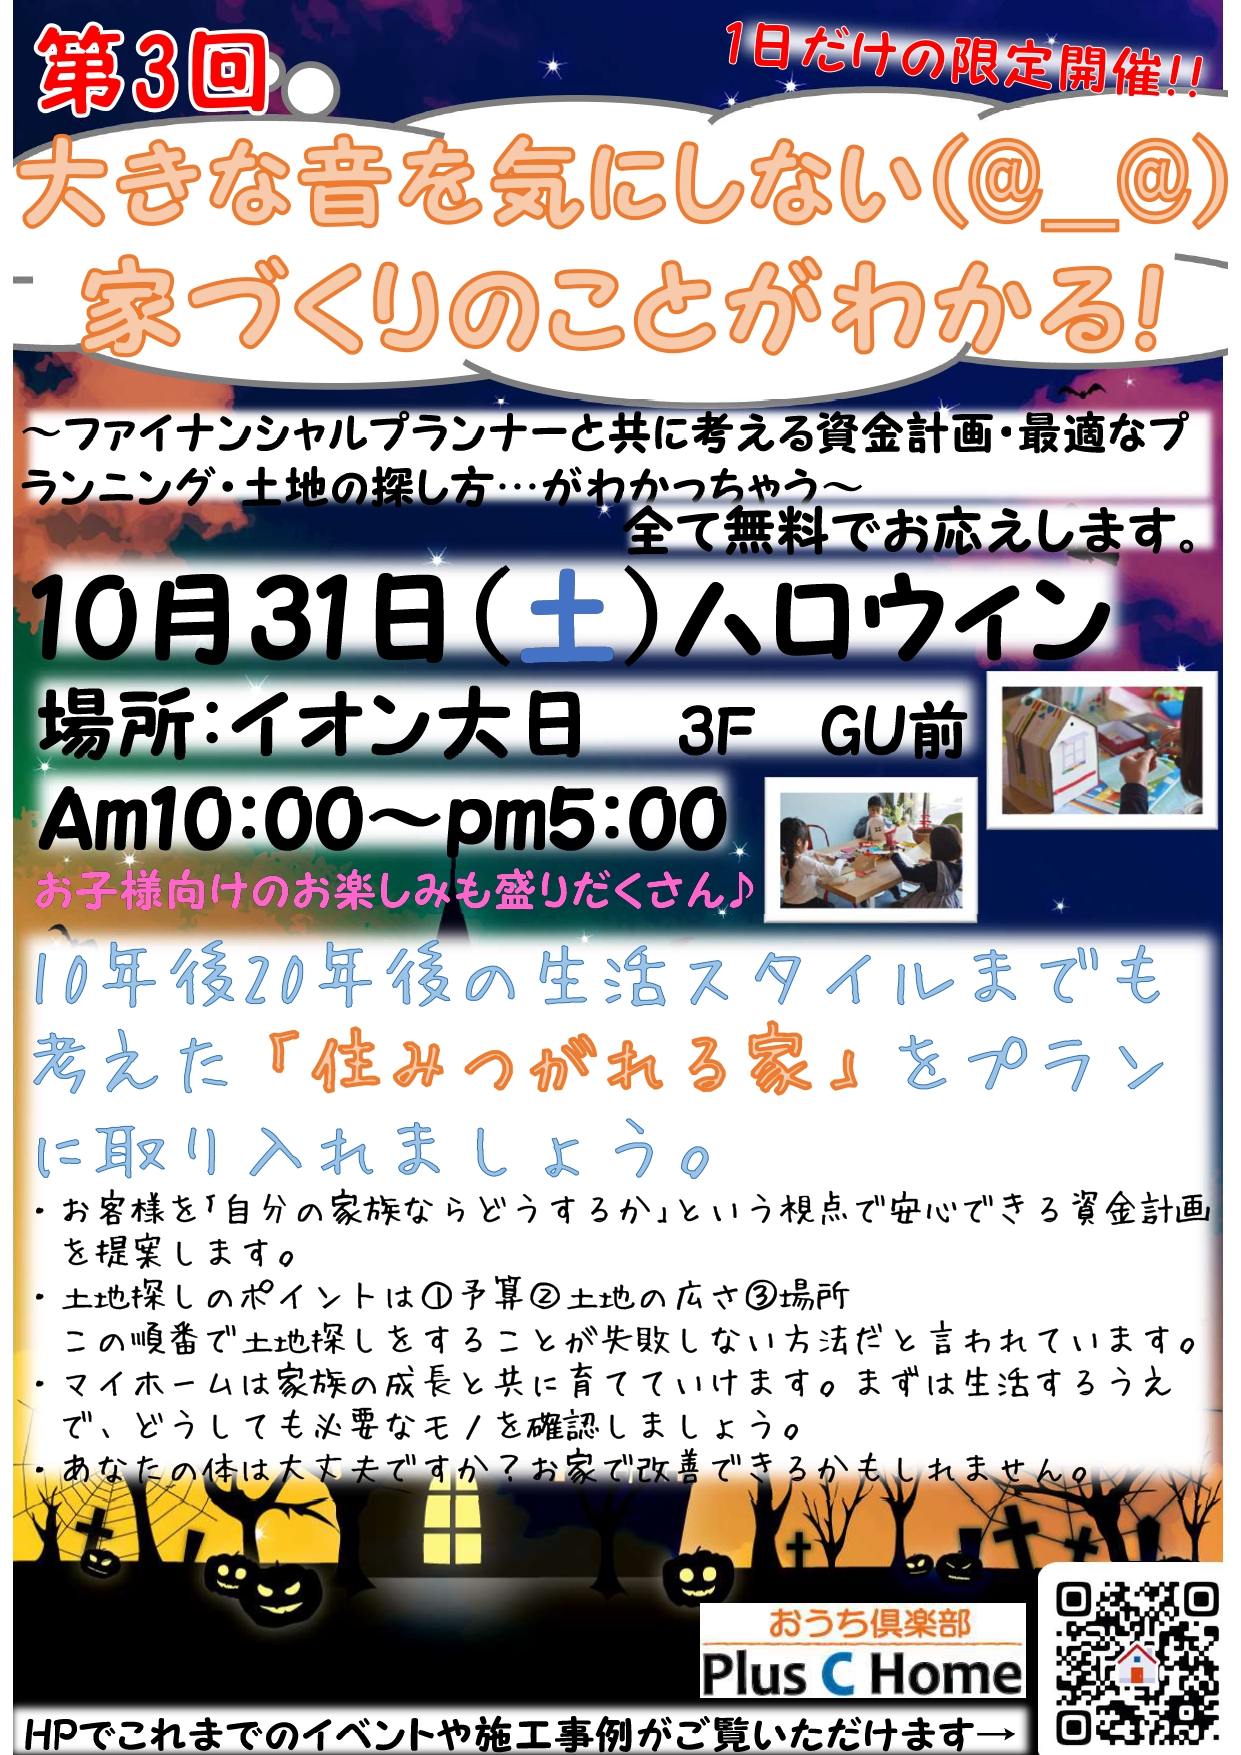 高気密・高断熱住宅を扱う大阪市の工務店Plus C Homeが住宅イベントを開催♪